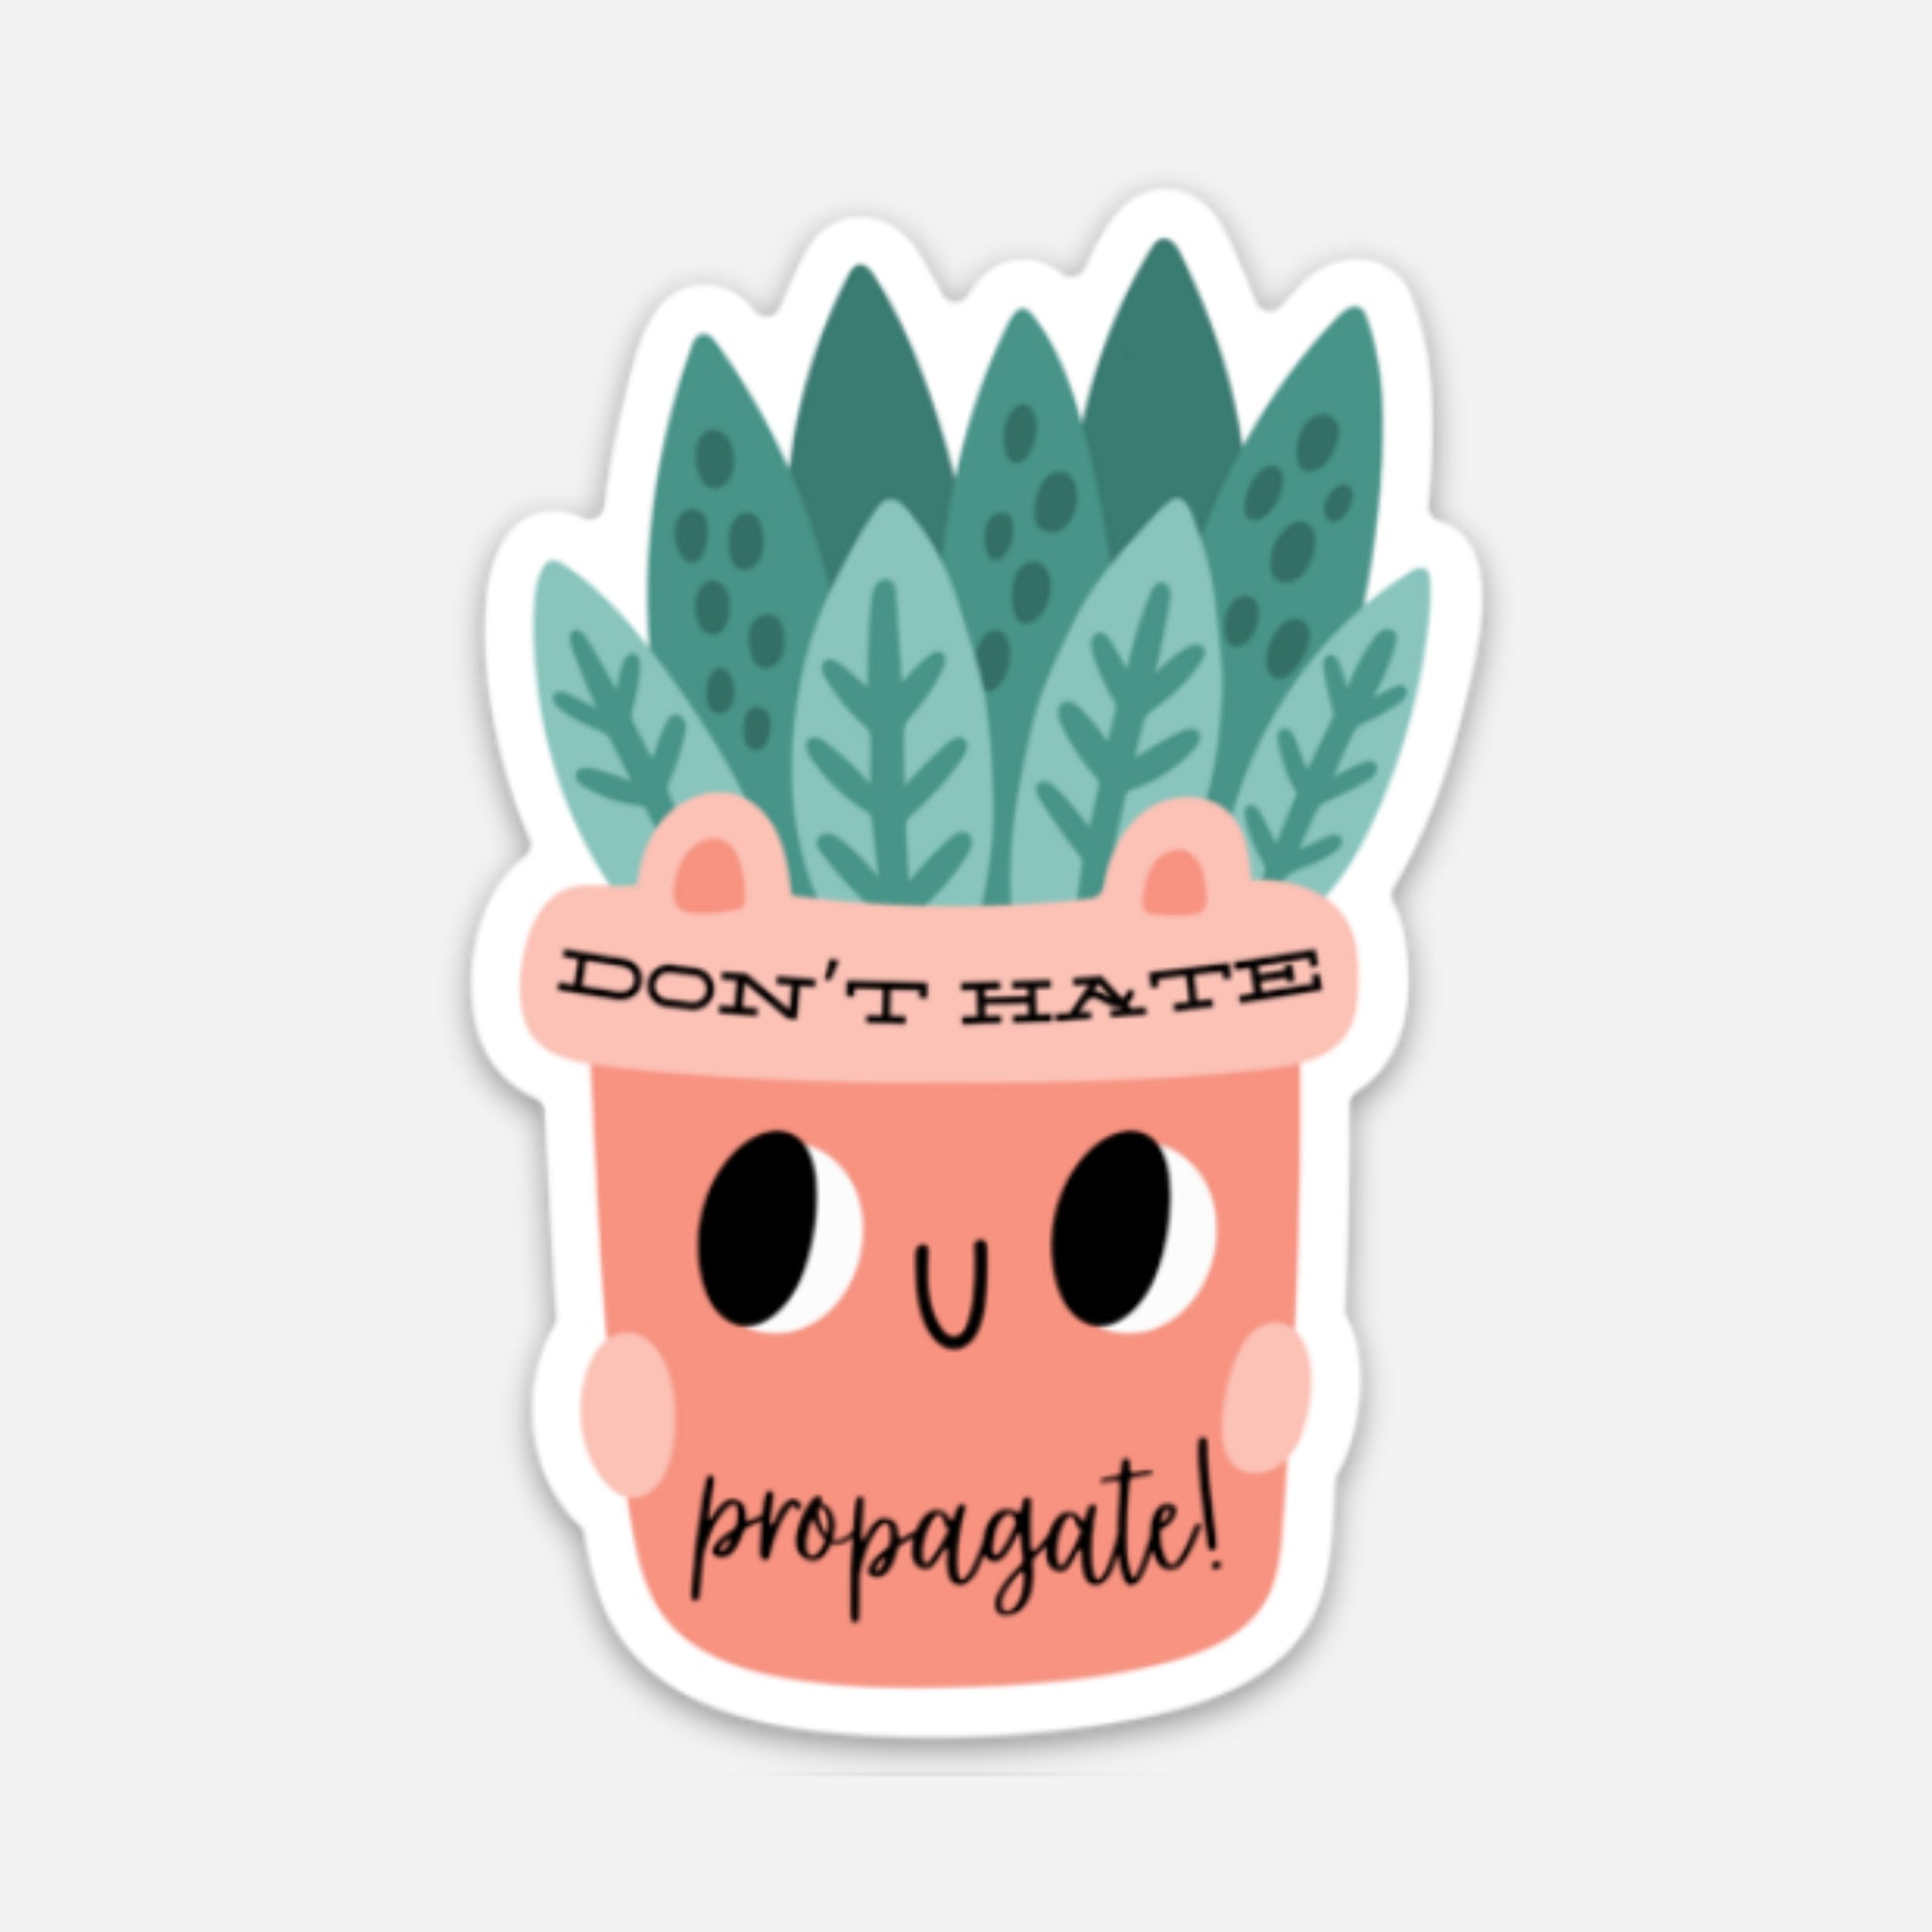 Don't Hate - Propagate!